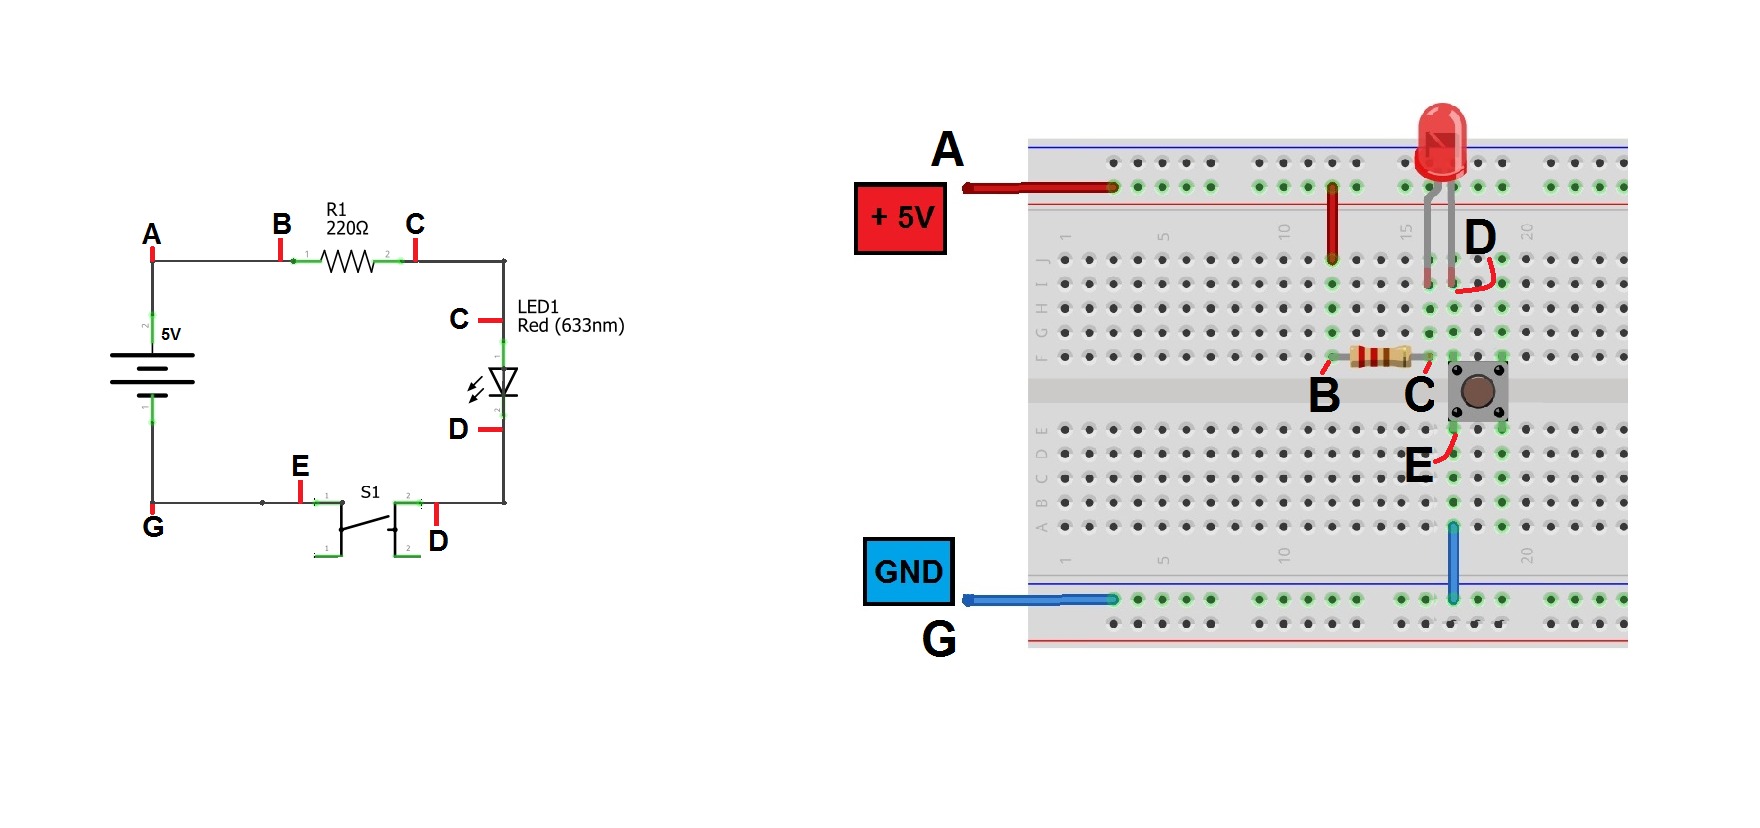 Passo 5 - montando circuito em uma matriz de contato - protoboard